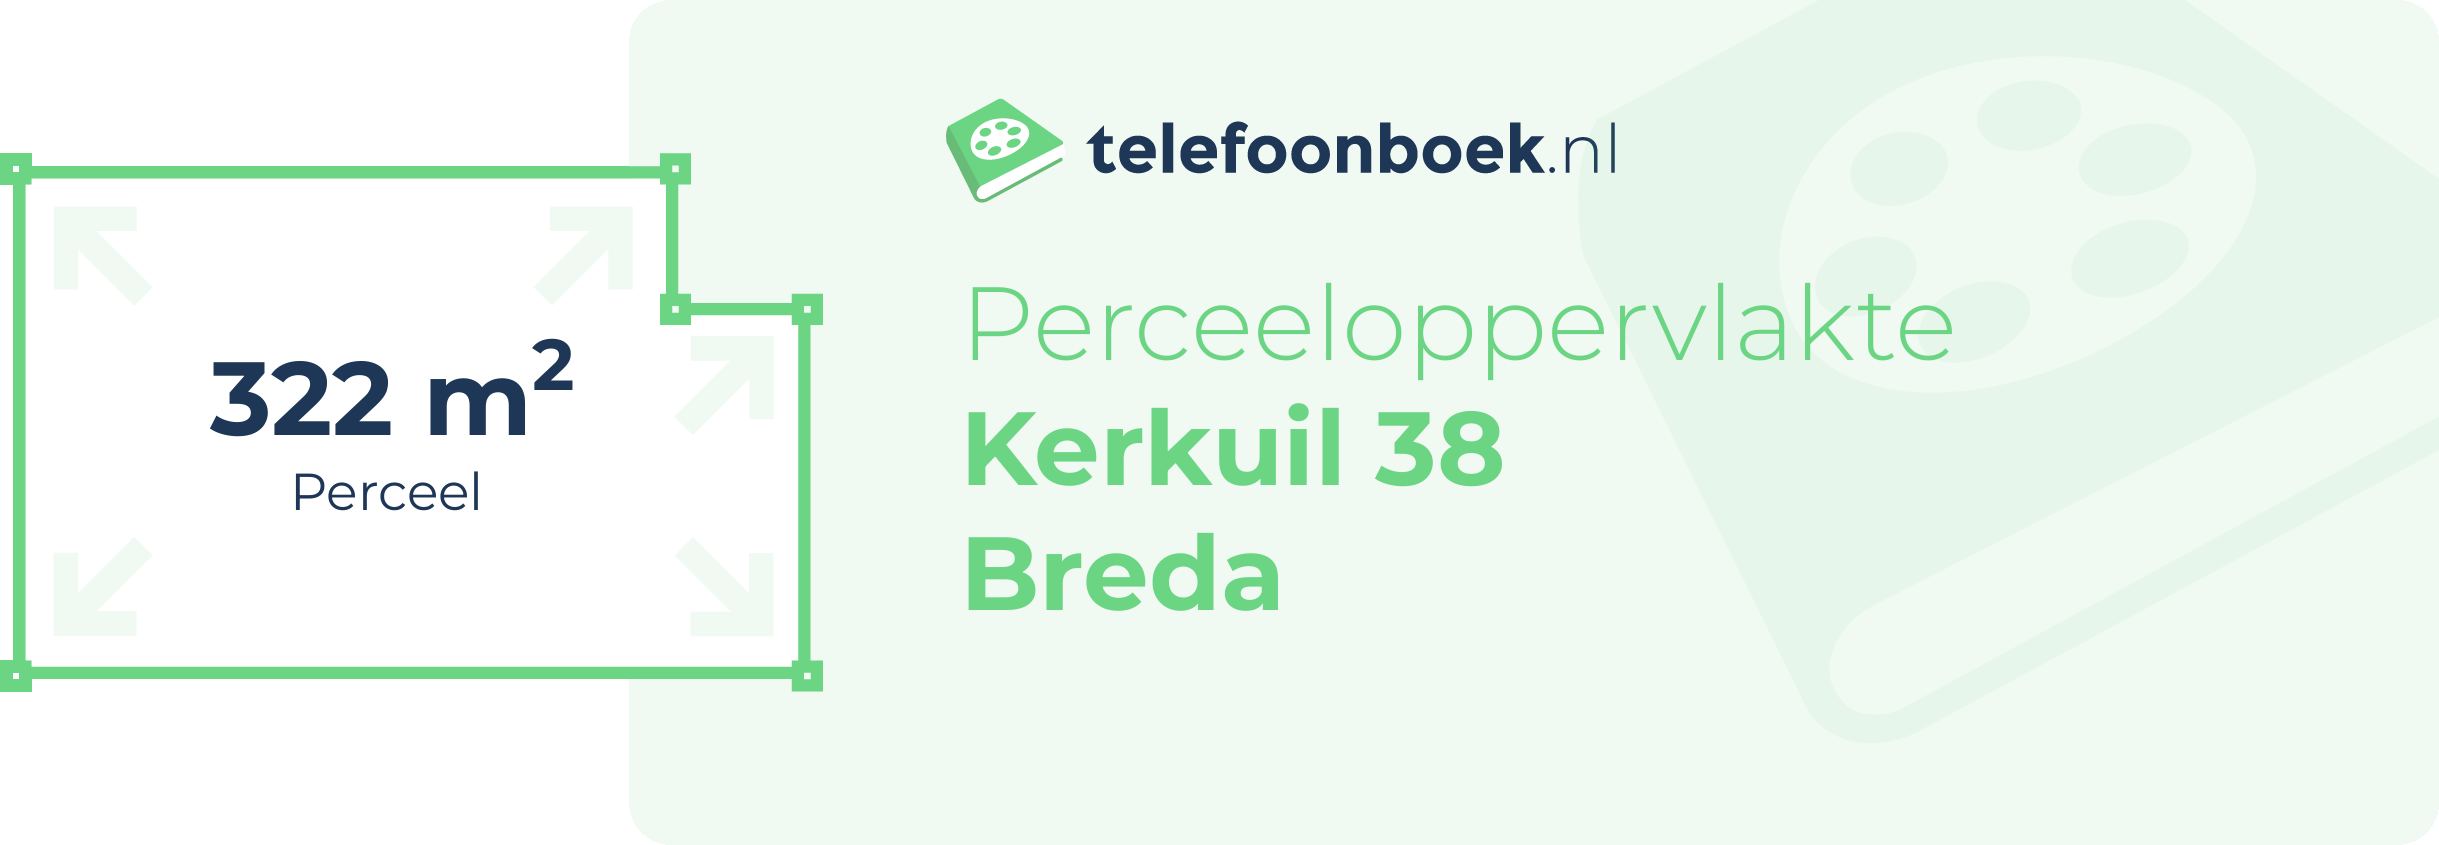 Perceeloppervlakte Kerkuil 38 Breda